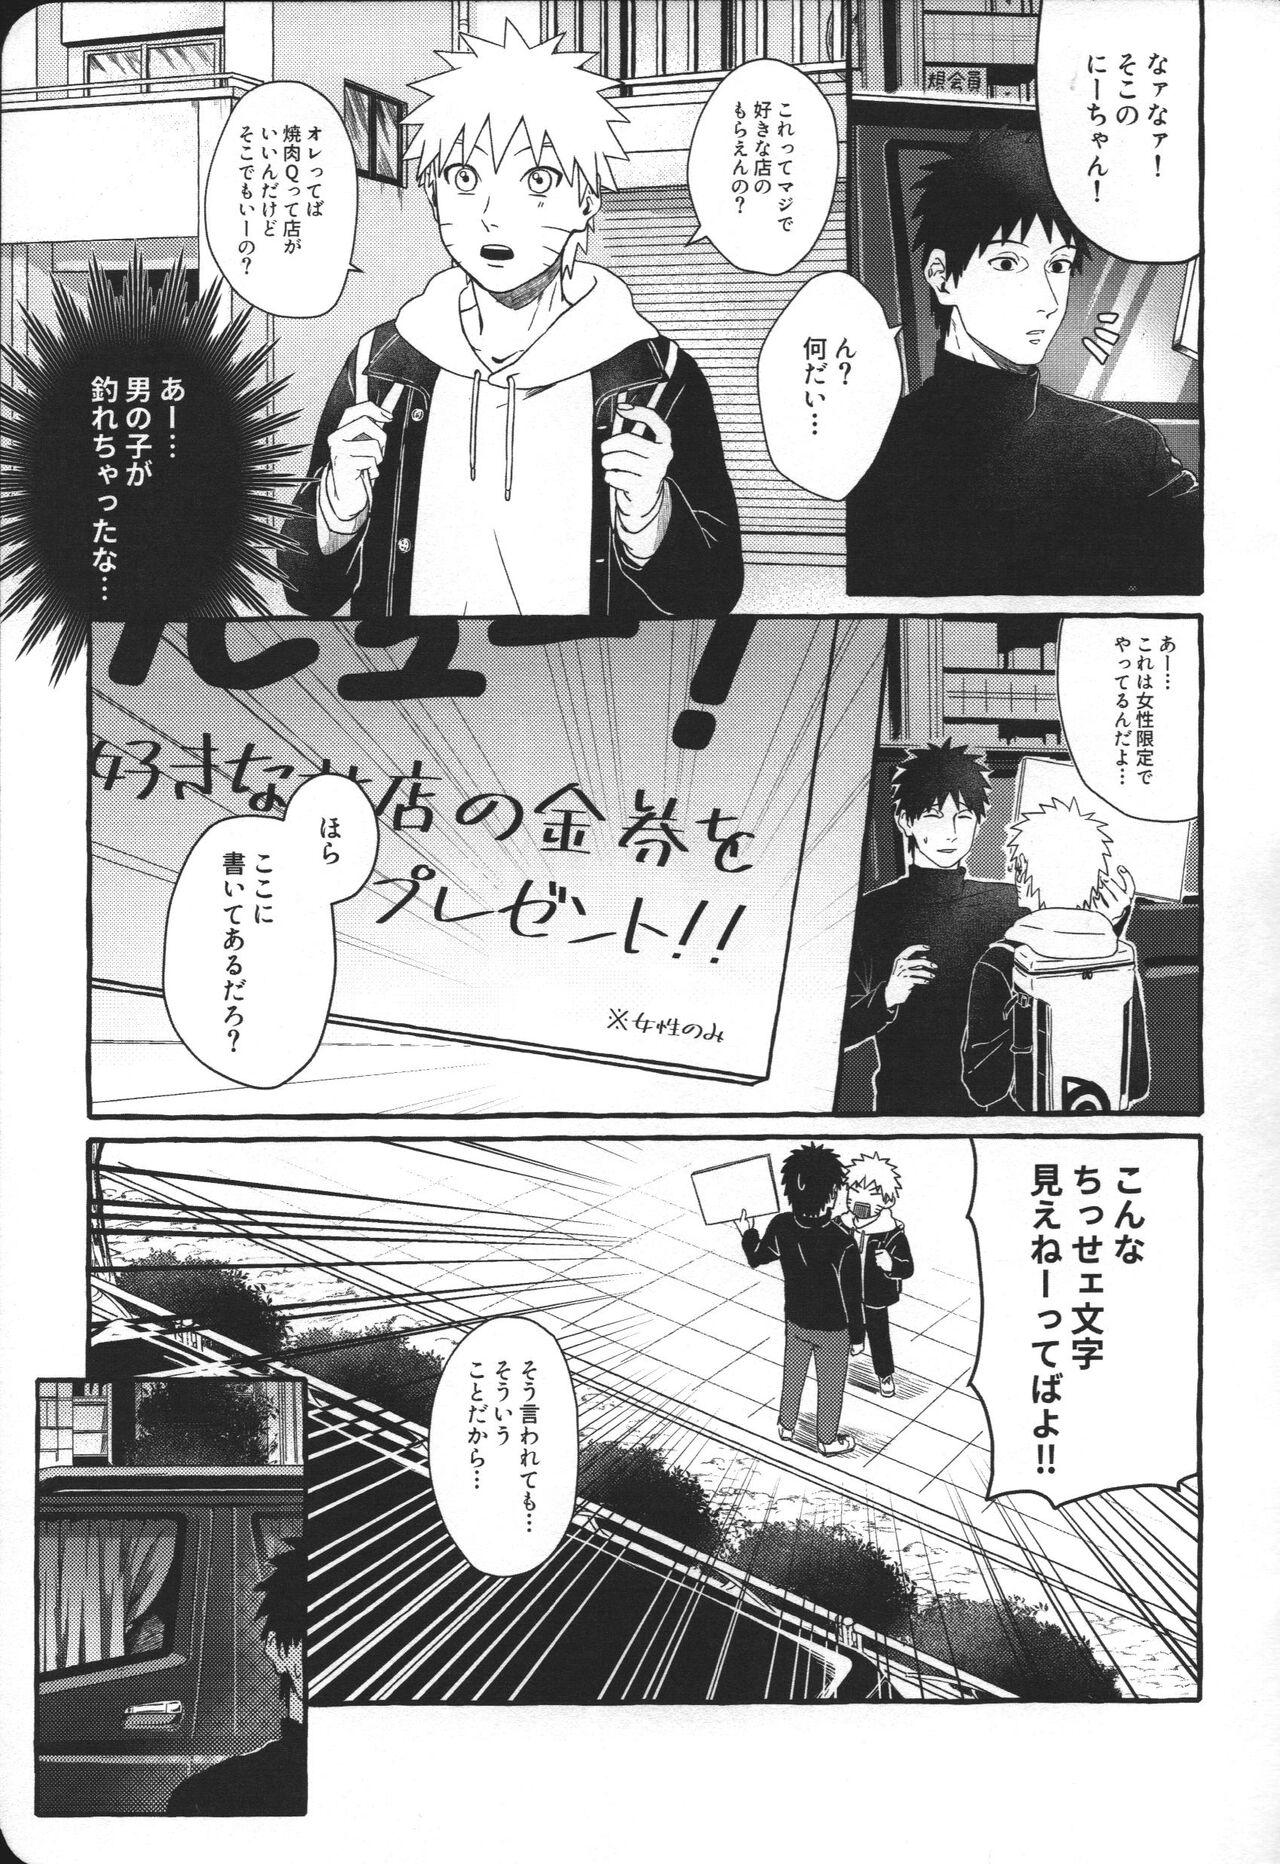 Redbone Hajimete no anarusekkusu wa yoji kan hame taoshi - Naruto Deepthroat - Page 6